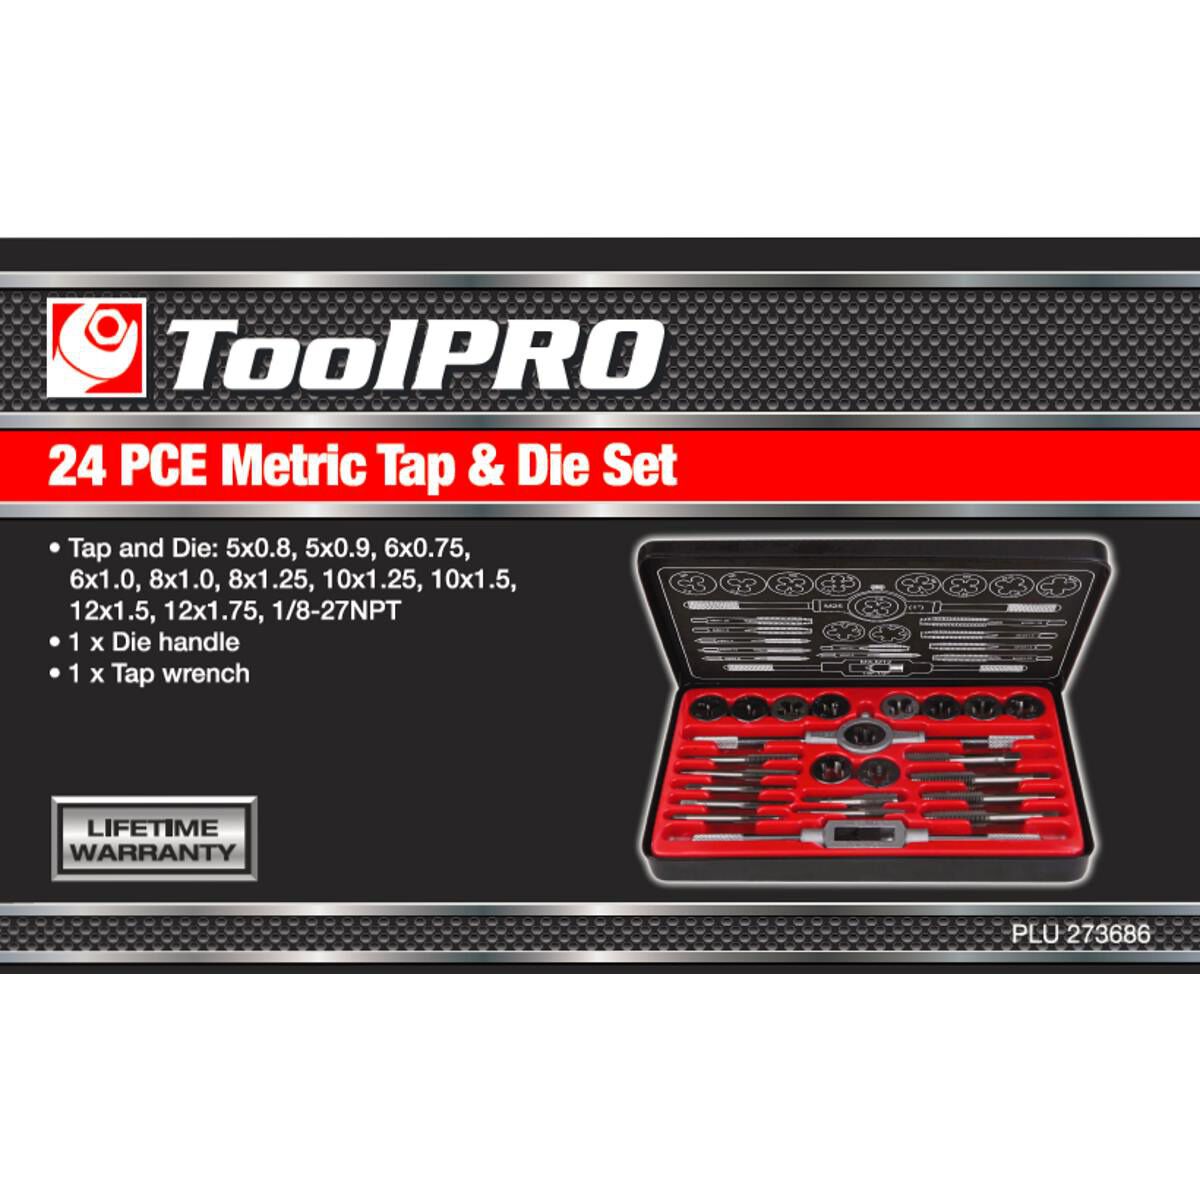 ToolPRO Tap and Die Set Metric 24 Piece, , scaau_hi-res